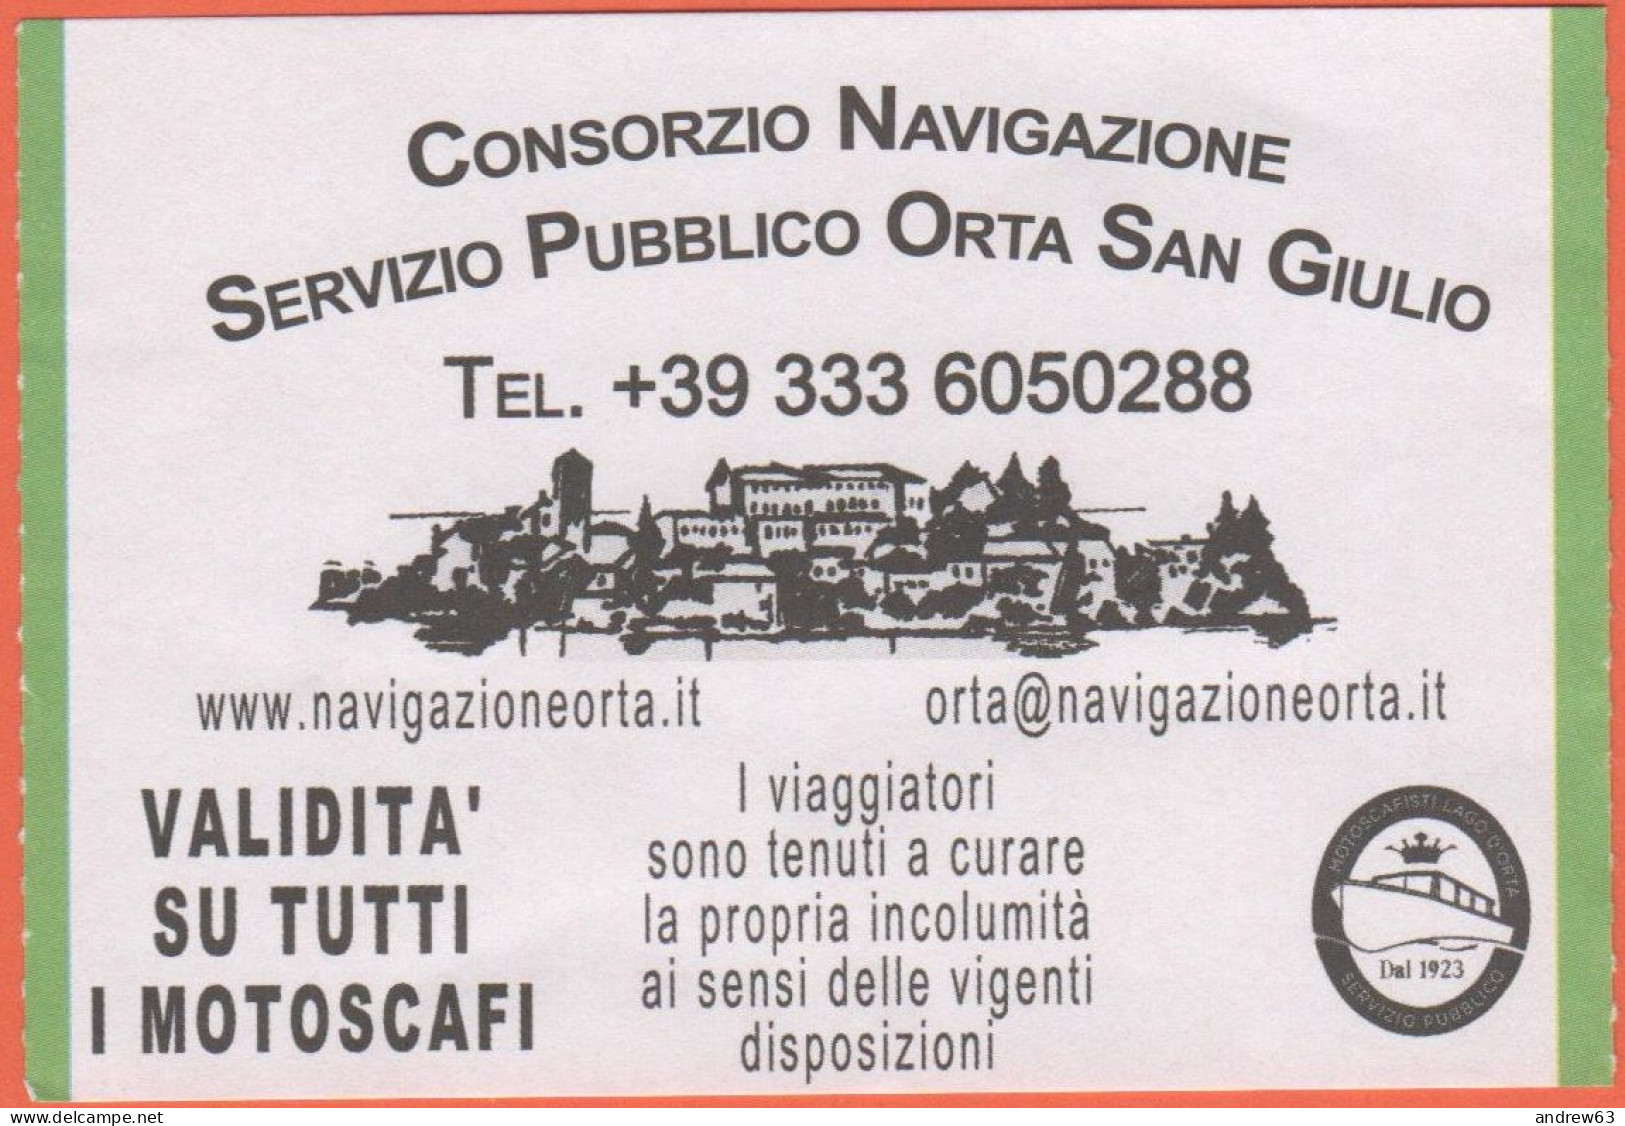 Consorzio Di Navigazione - Servizio Pubblico Orta San Giulio - Biglietto Di Corsa Semplice - Usato - Europa